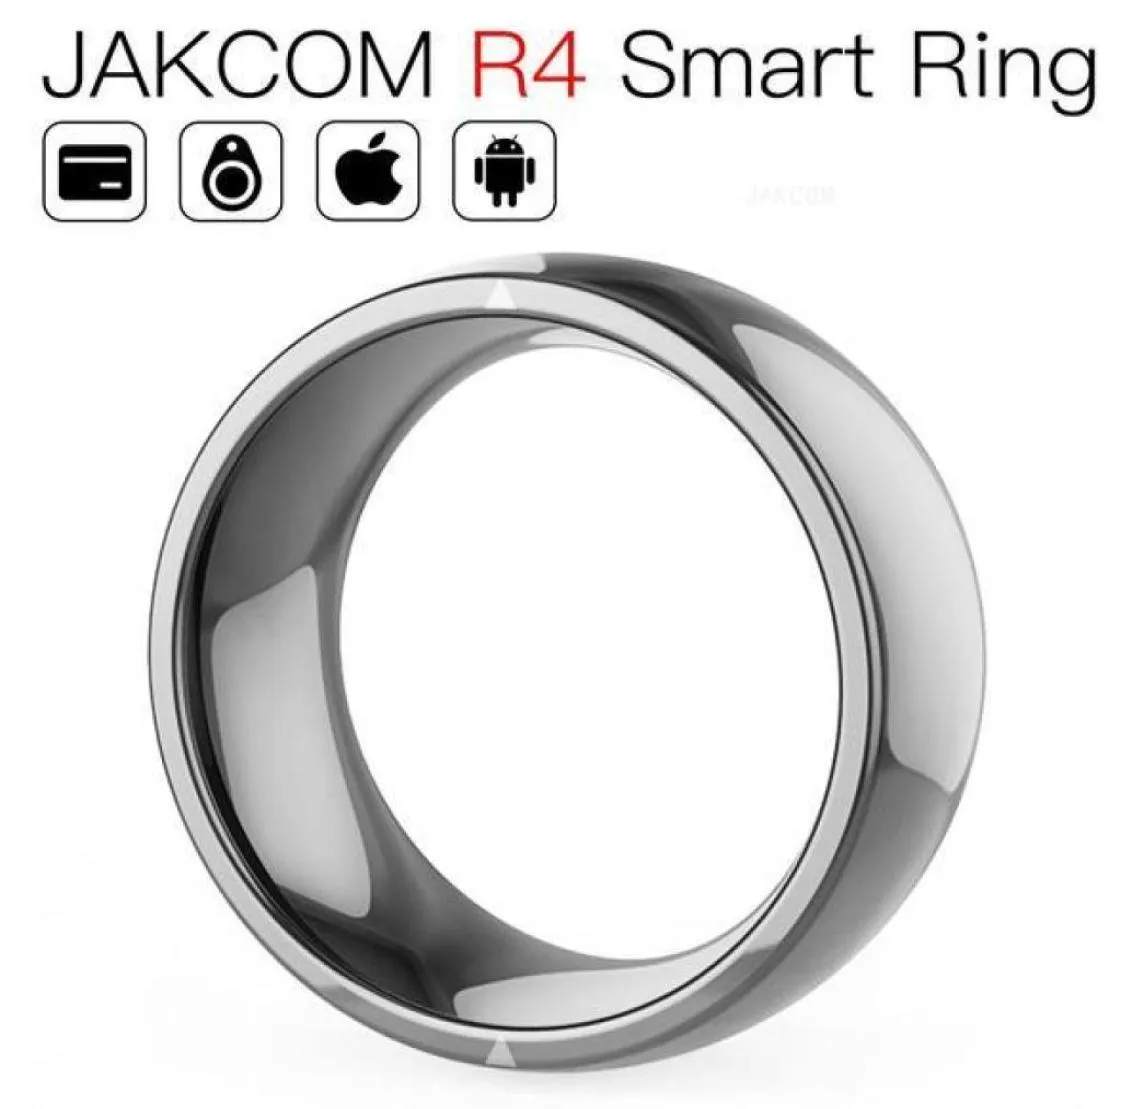 JAKCOM R4 SMART RING Ny produkt av Access Control Card som Leitor NFC SIM -kortkloner Timing System9834203